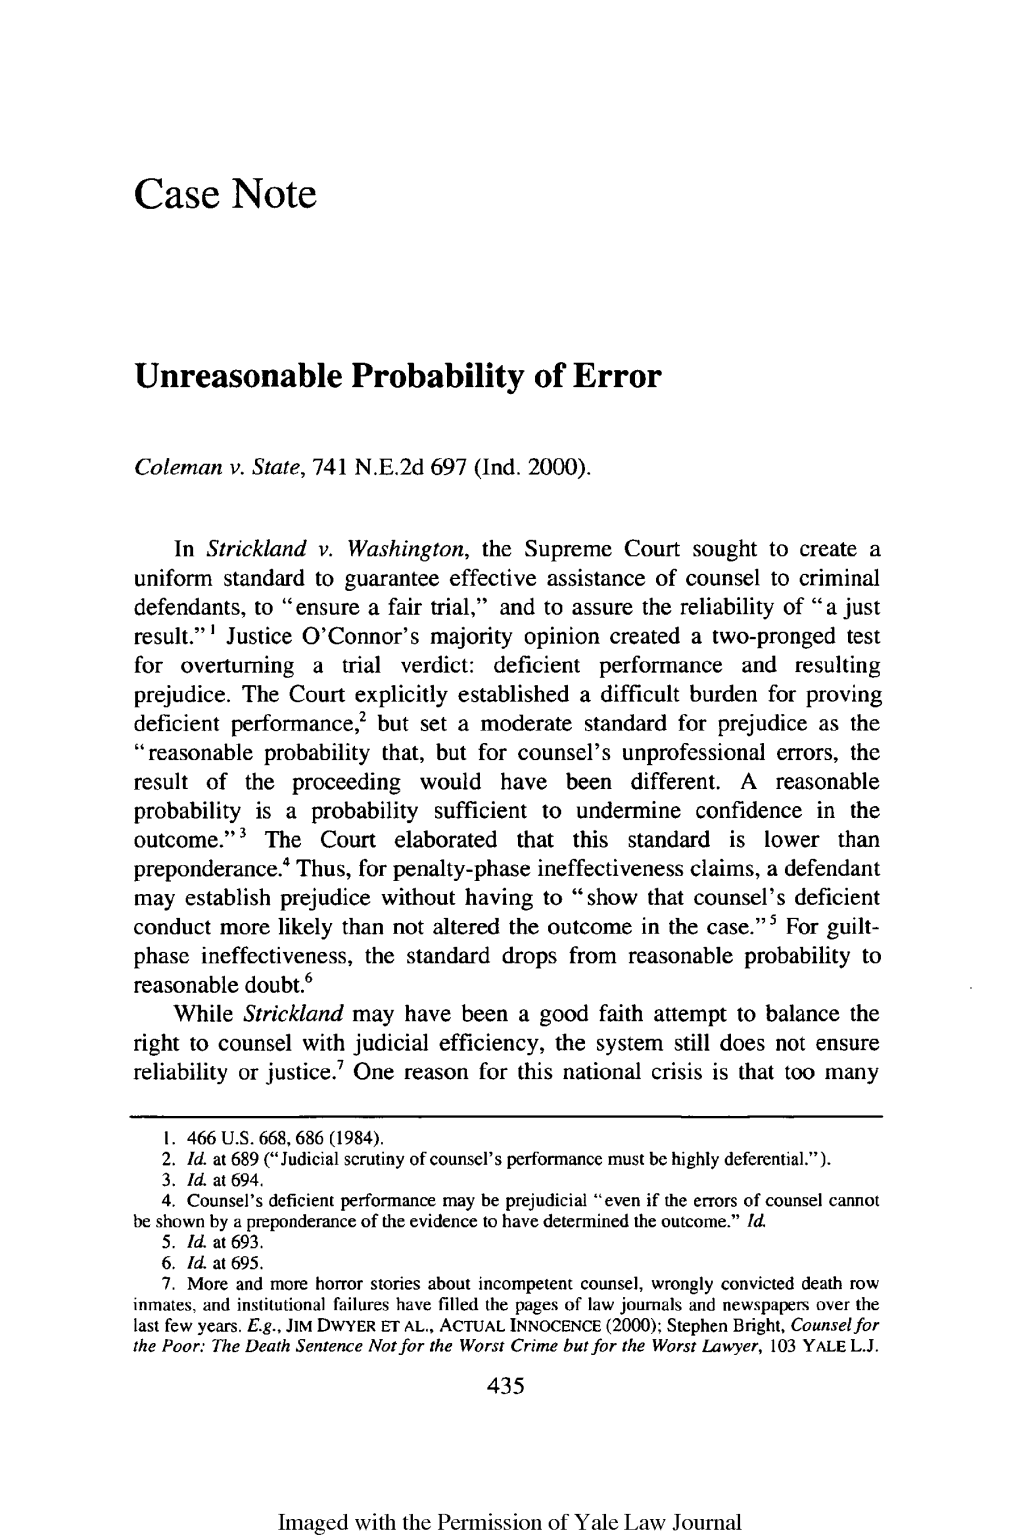 Unreasonable Probability of Error